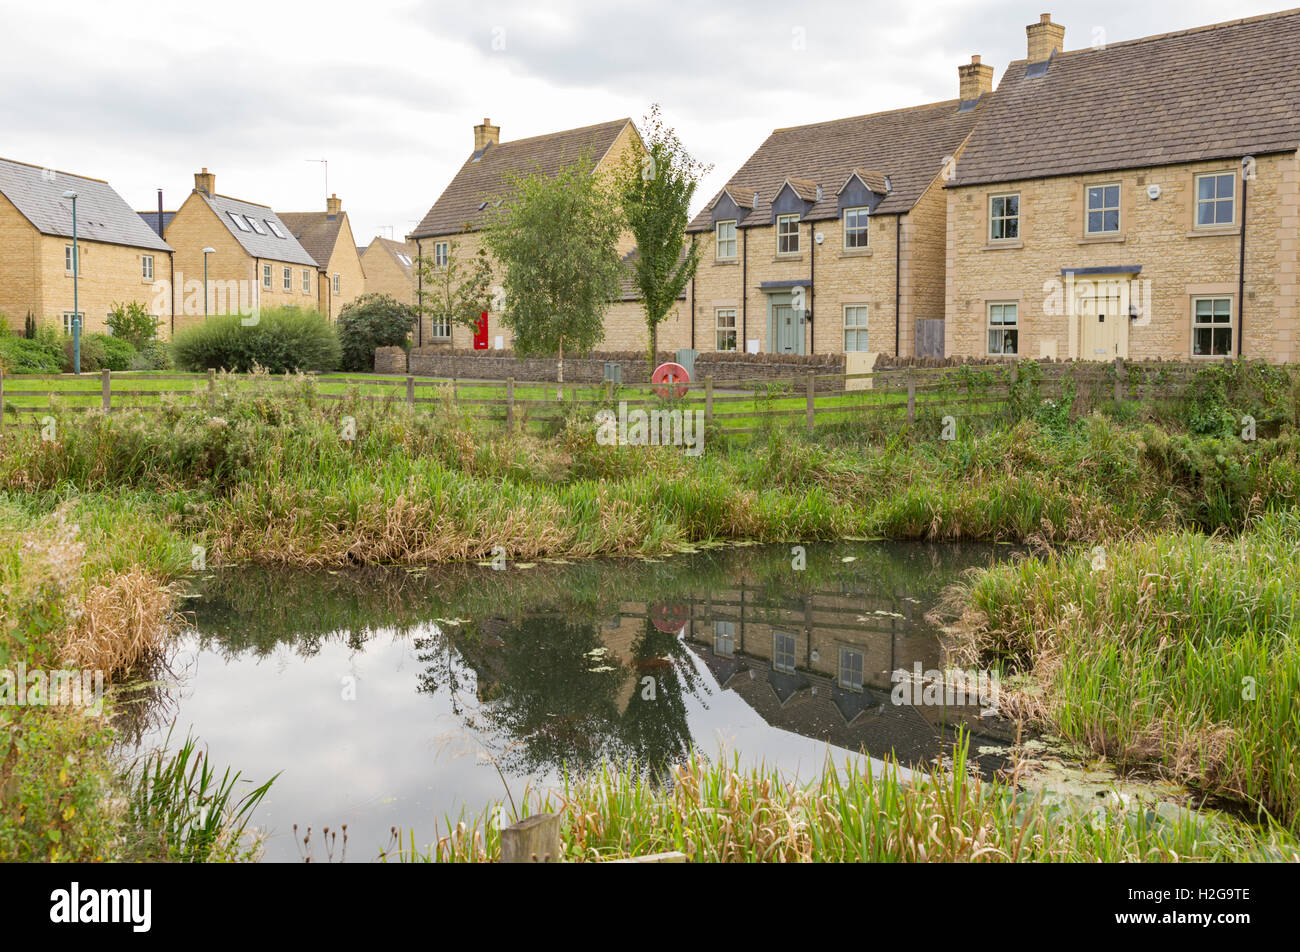 Une nature étang construit sur un nouvel ensemble résidentiel en bordure d'un village, England, UK Banque D'Images